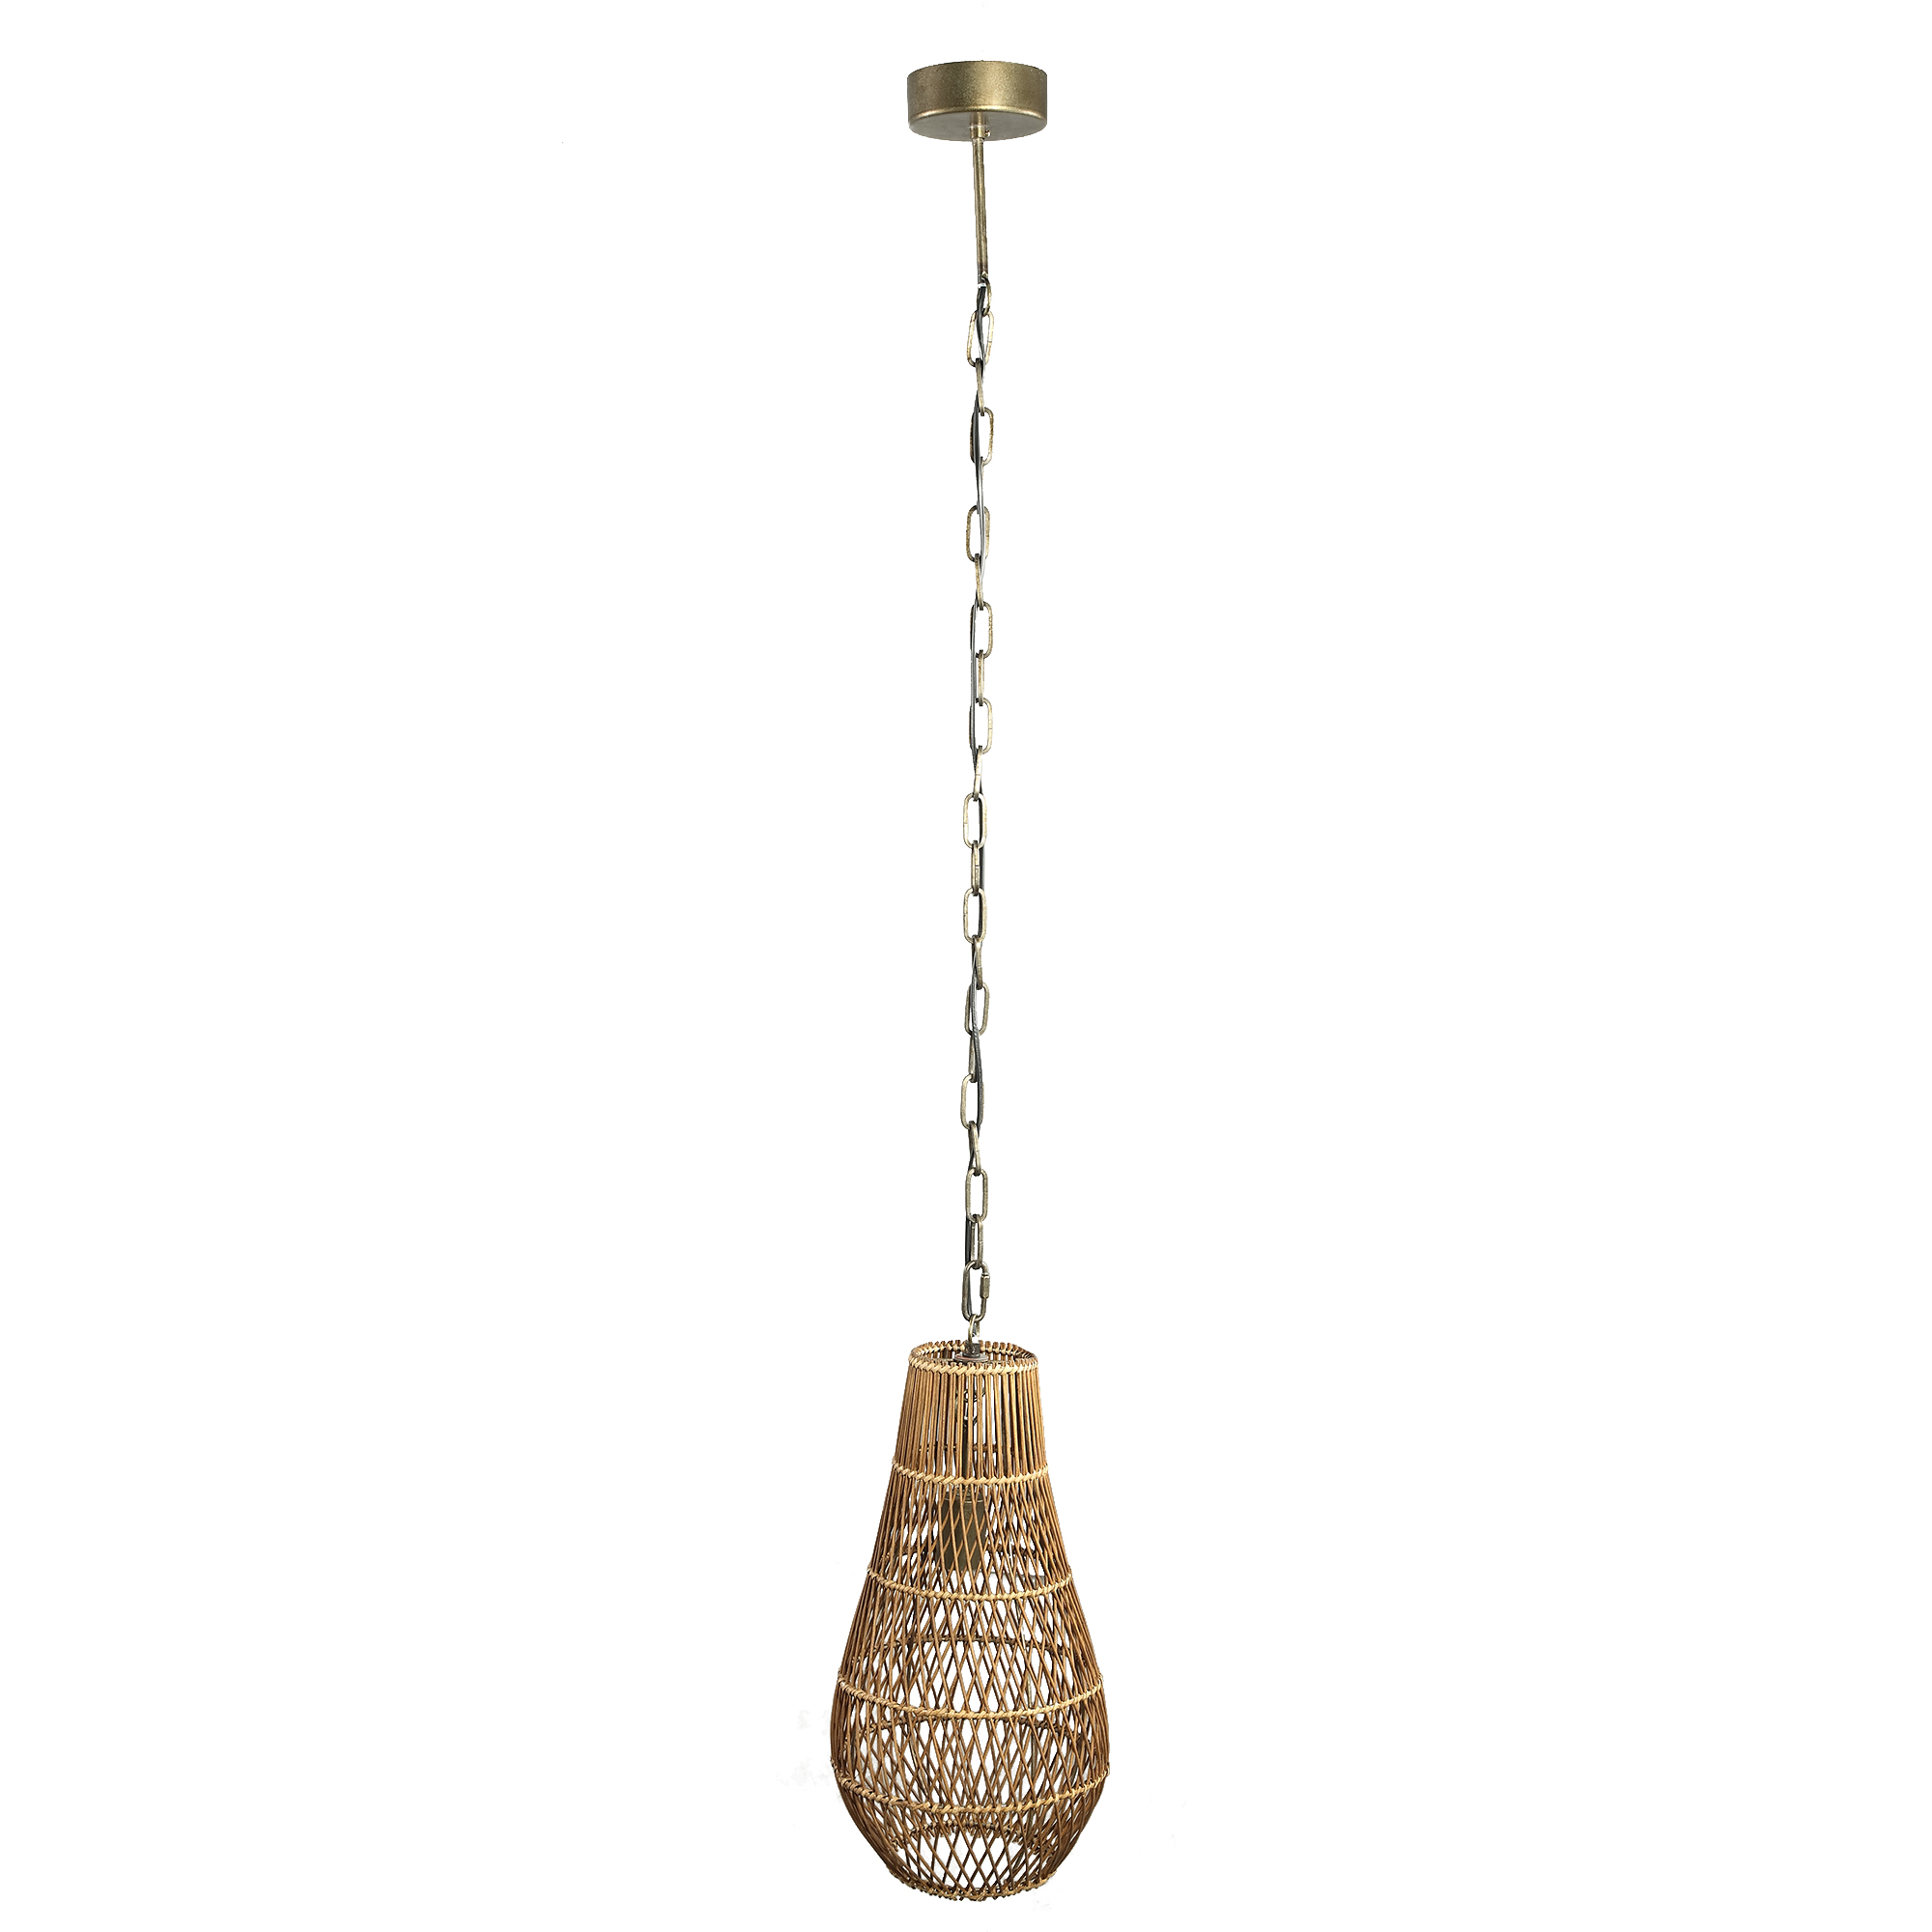 Erandi Natural reed hanging lamp egg shape round